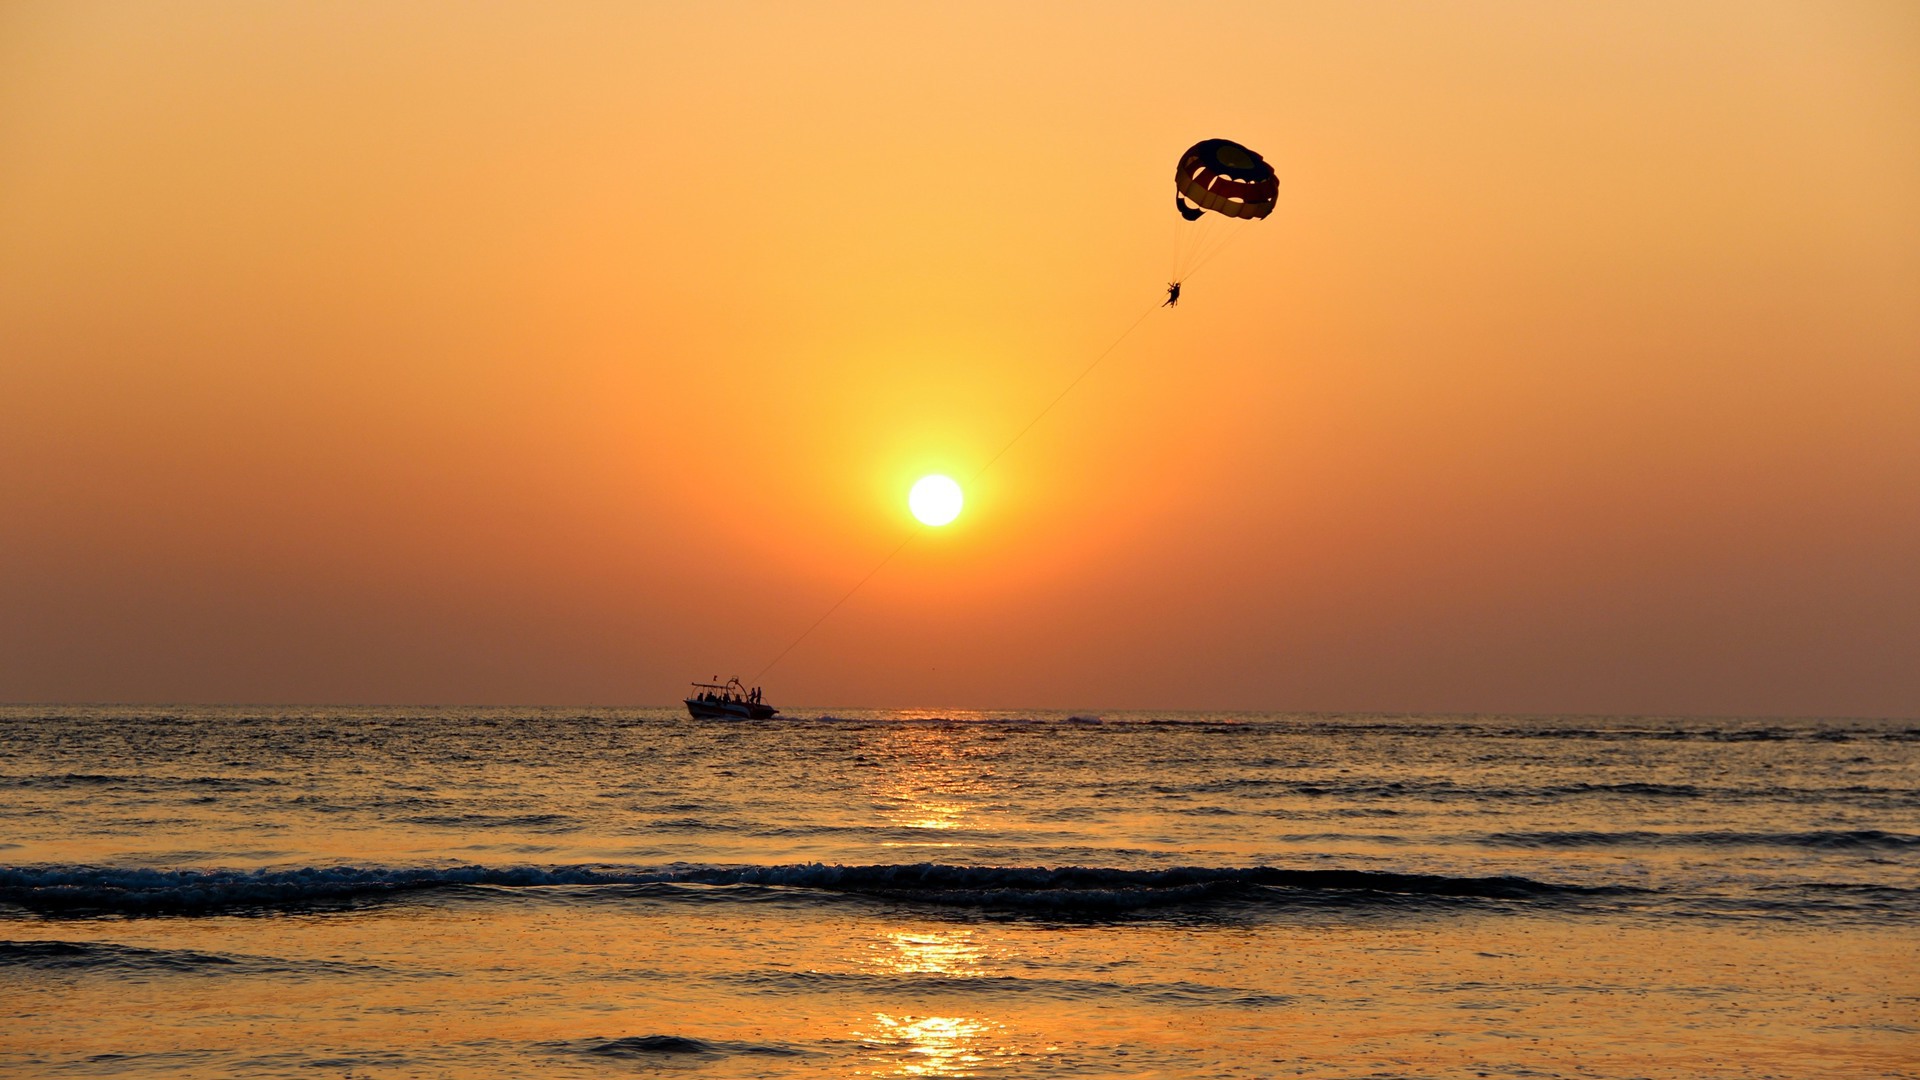 Paragliding and hot-air ballooning